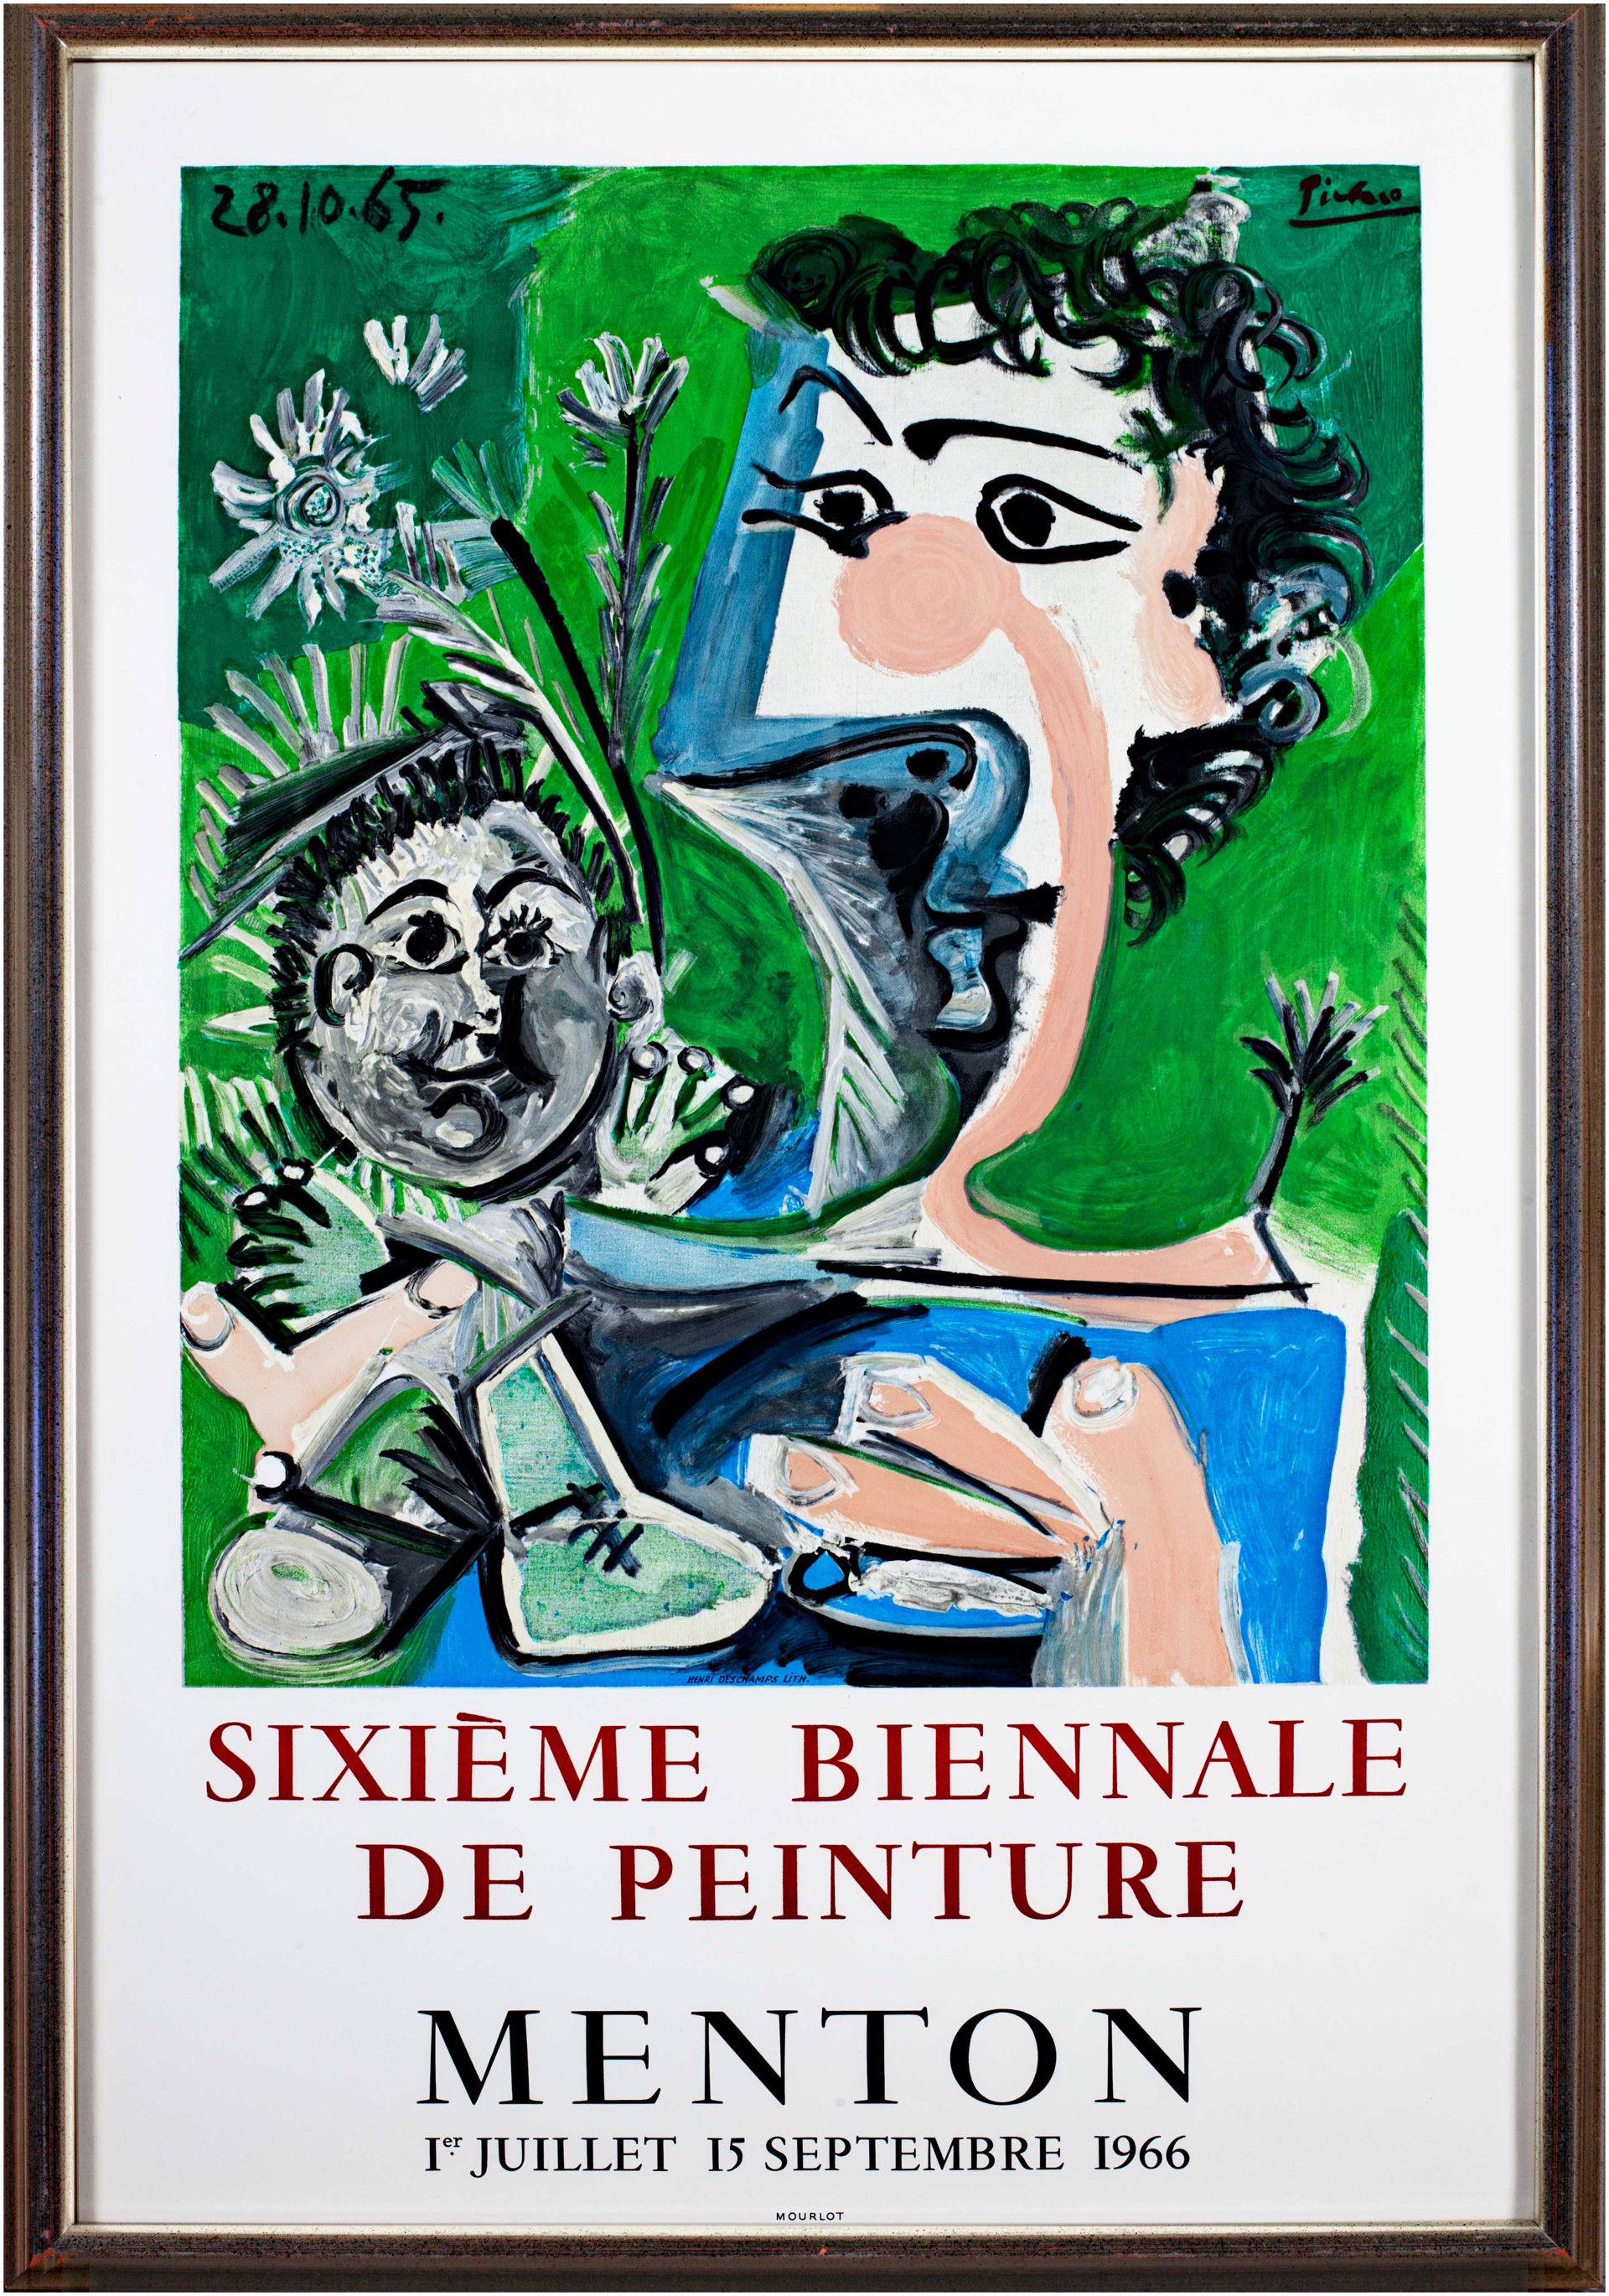 Sixieme Biennale De Peinture by Pablo Picasso